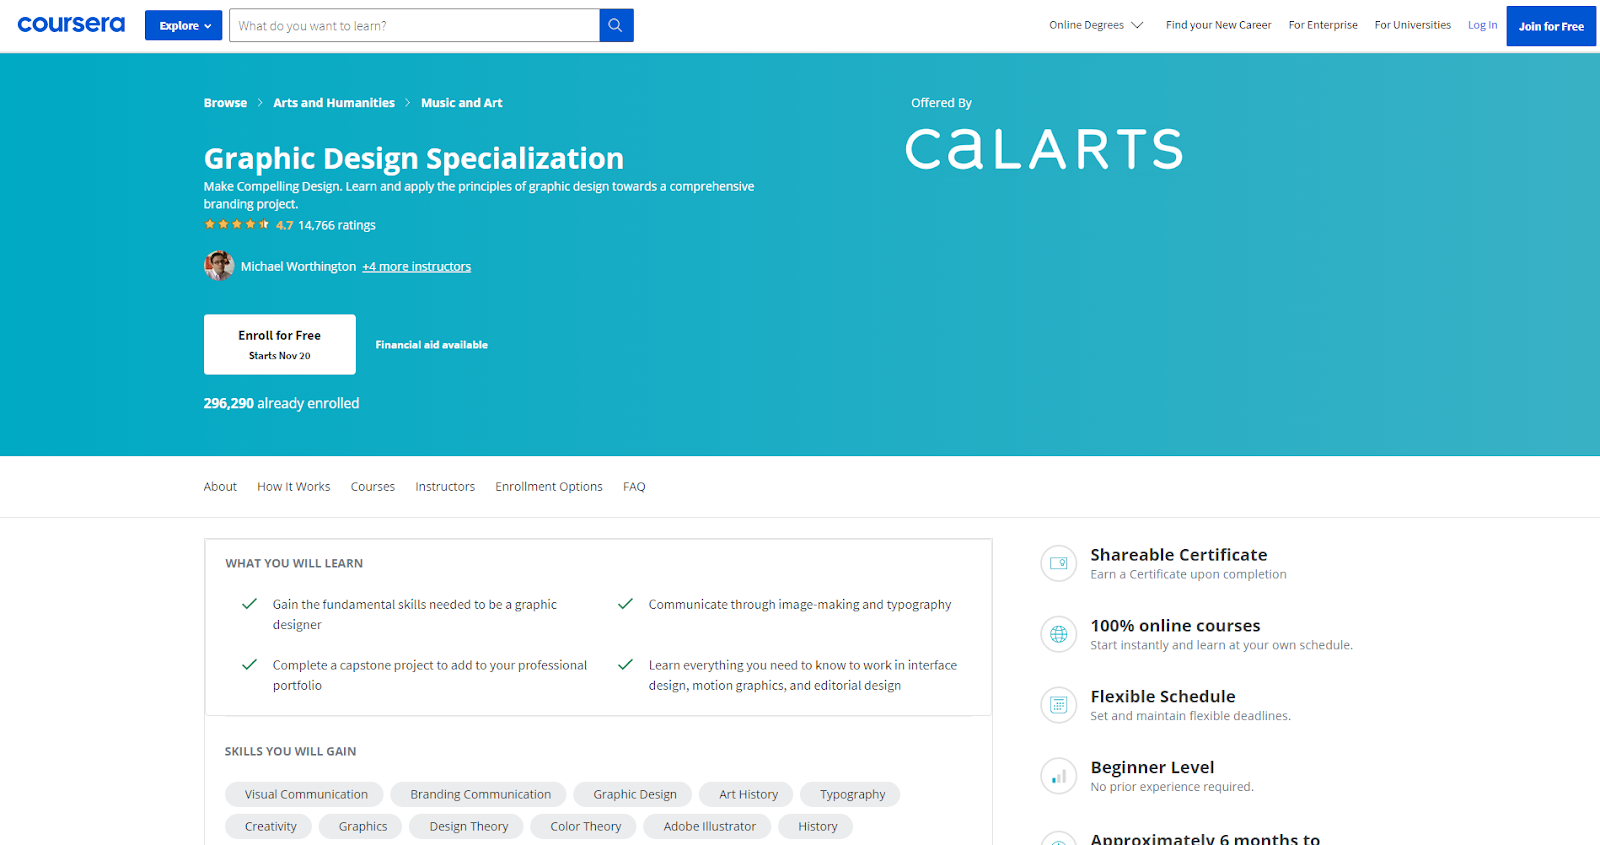 CalArts’ Graphic Design Specialization
